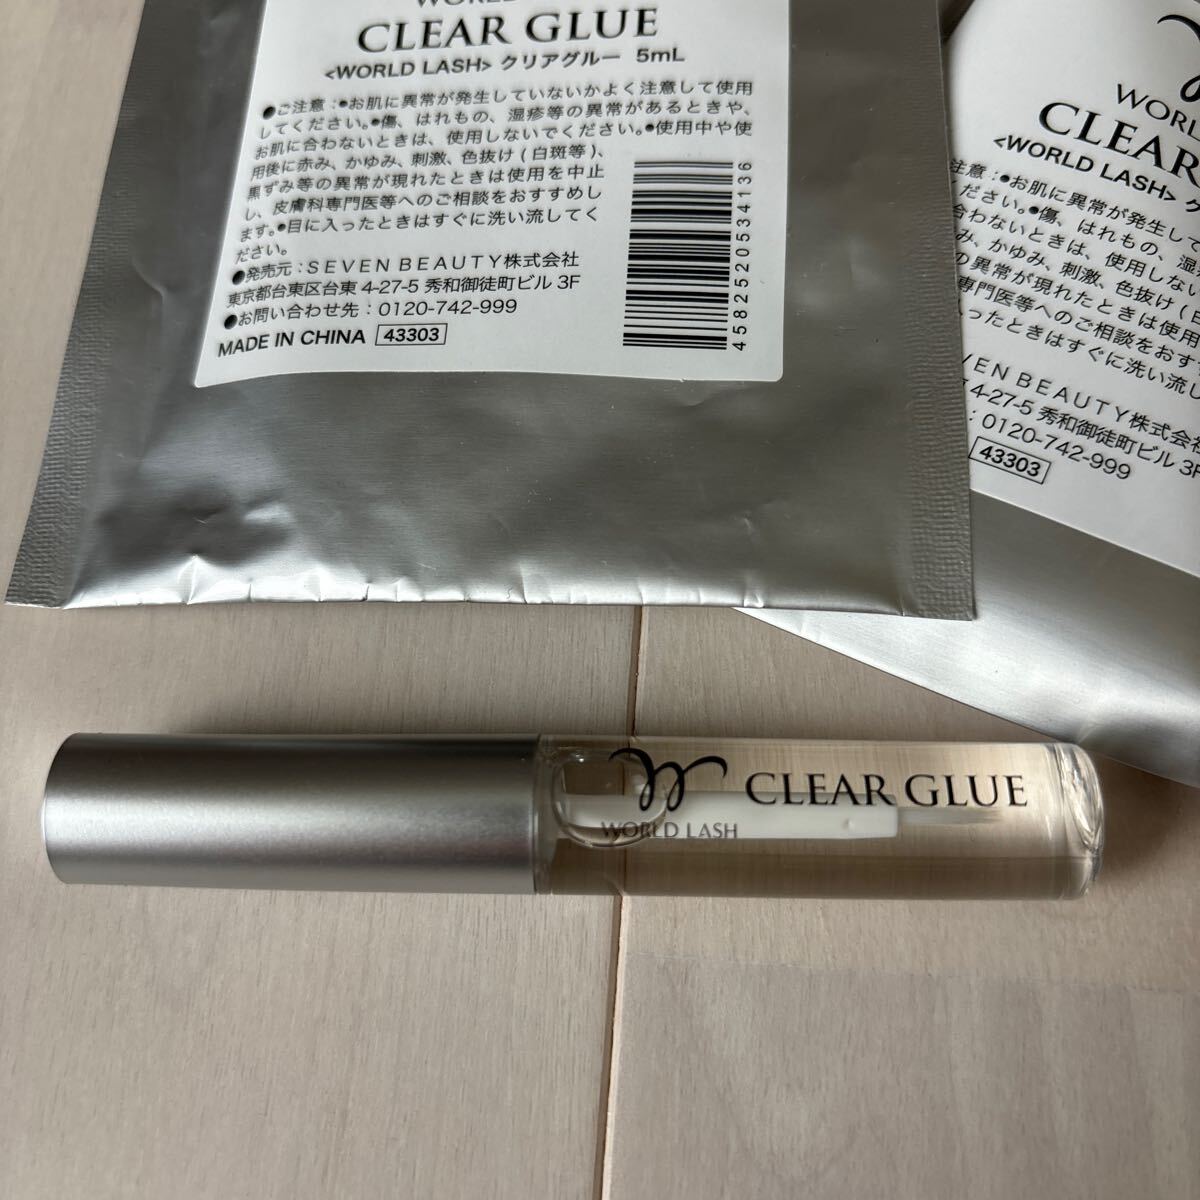  eyelash extensions clear glue 3 pcs set 